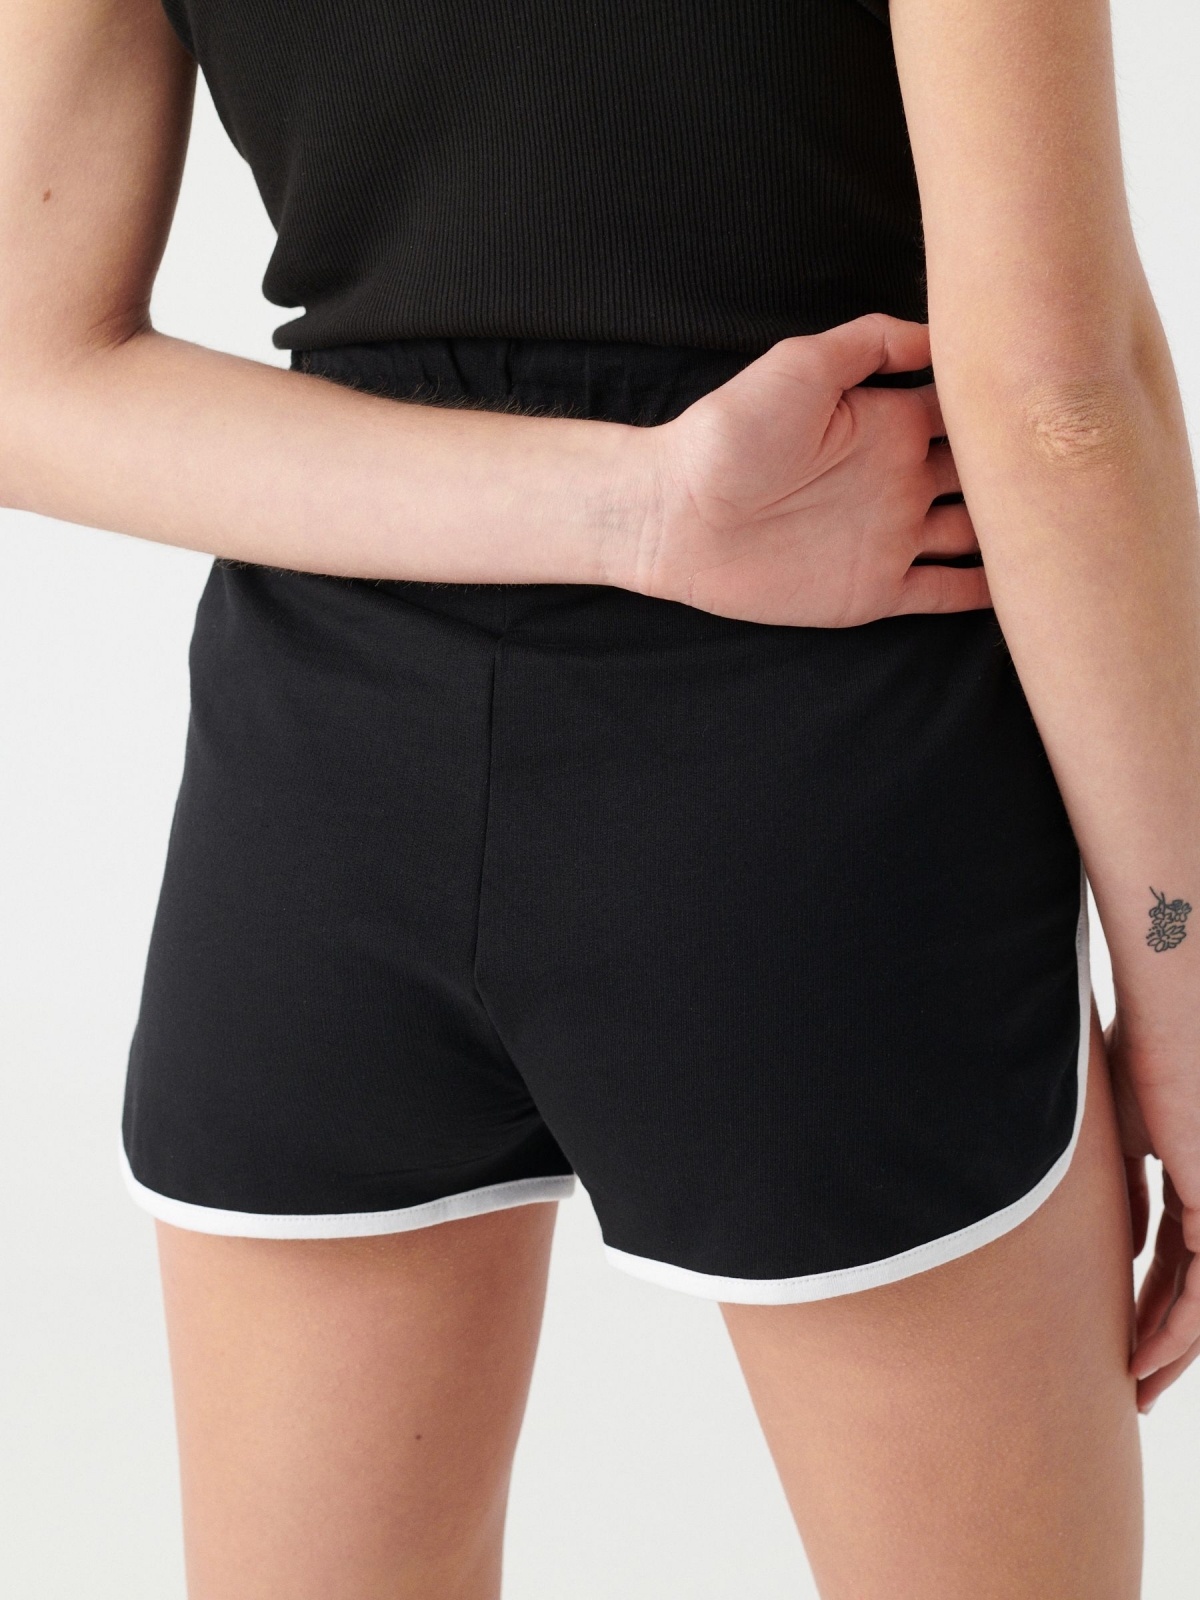 Contrast trim shorts black detail view